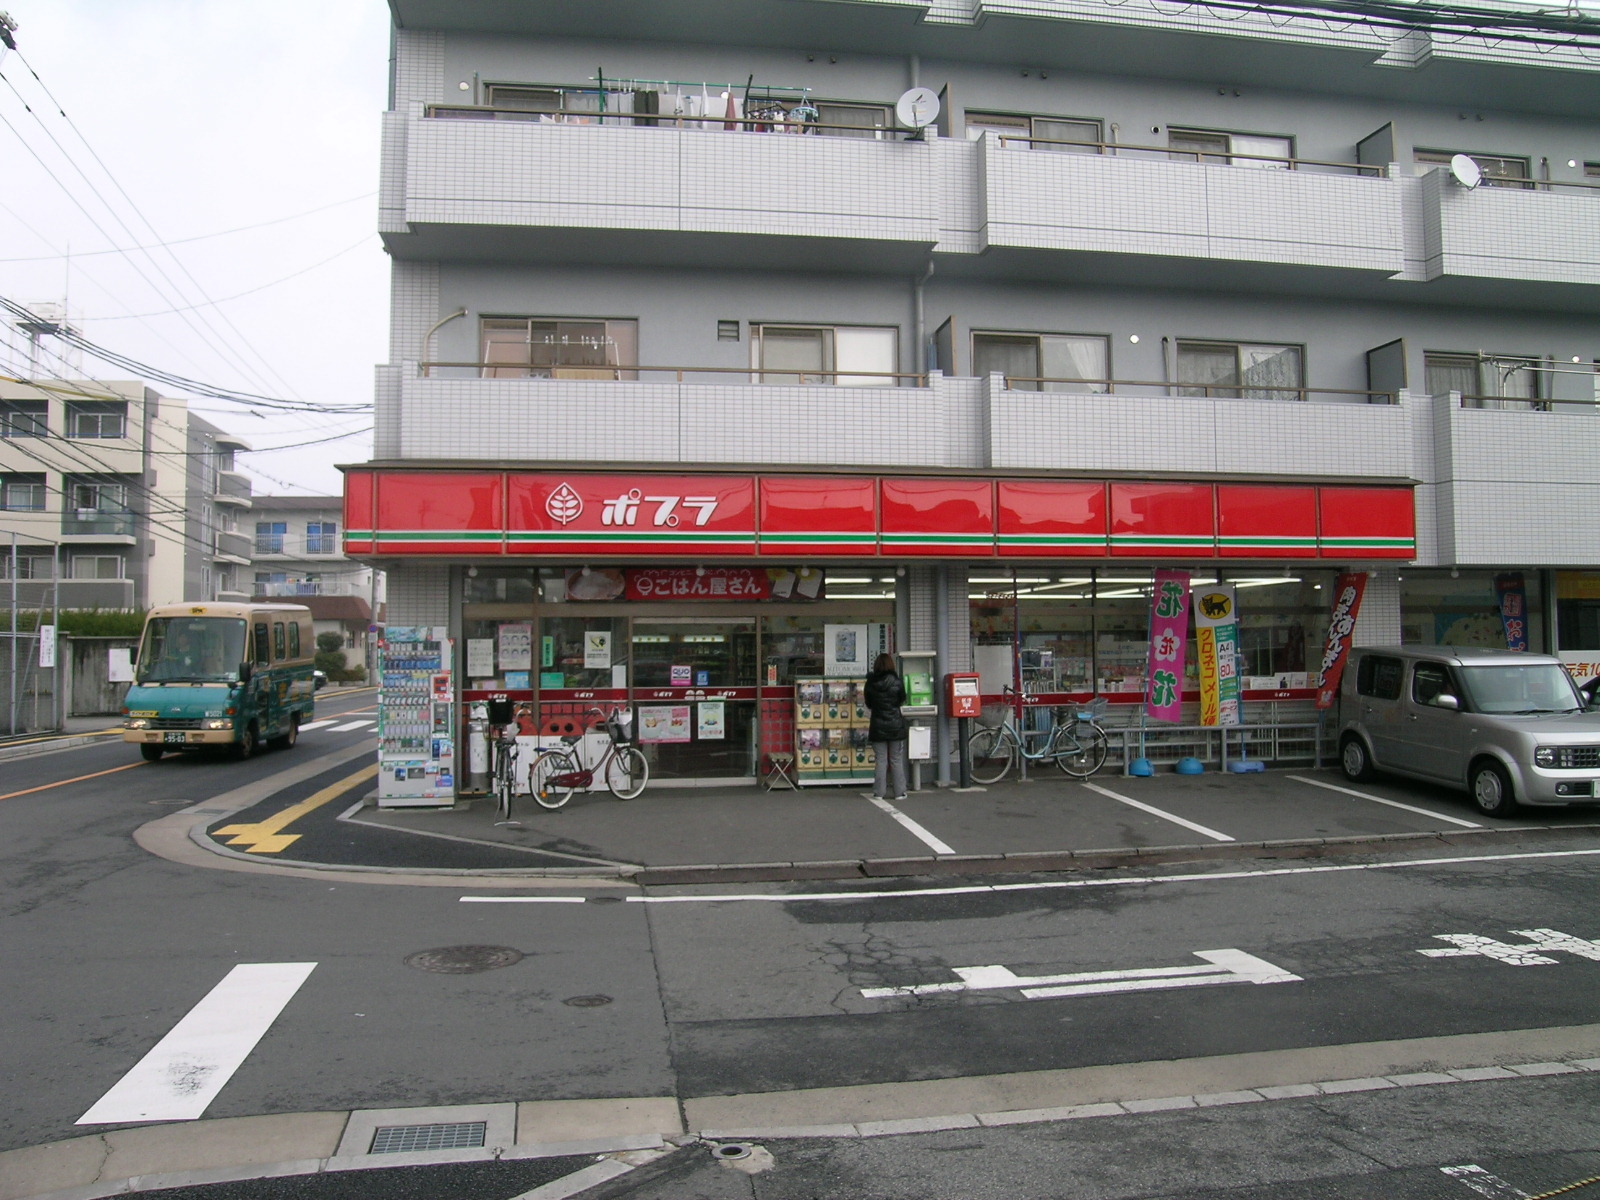 Convenience store. Poplar Itsukaichi central store up (convenience store) 134m